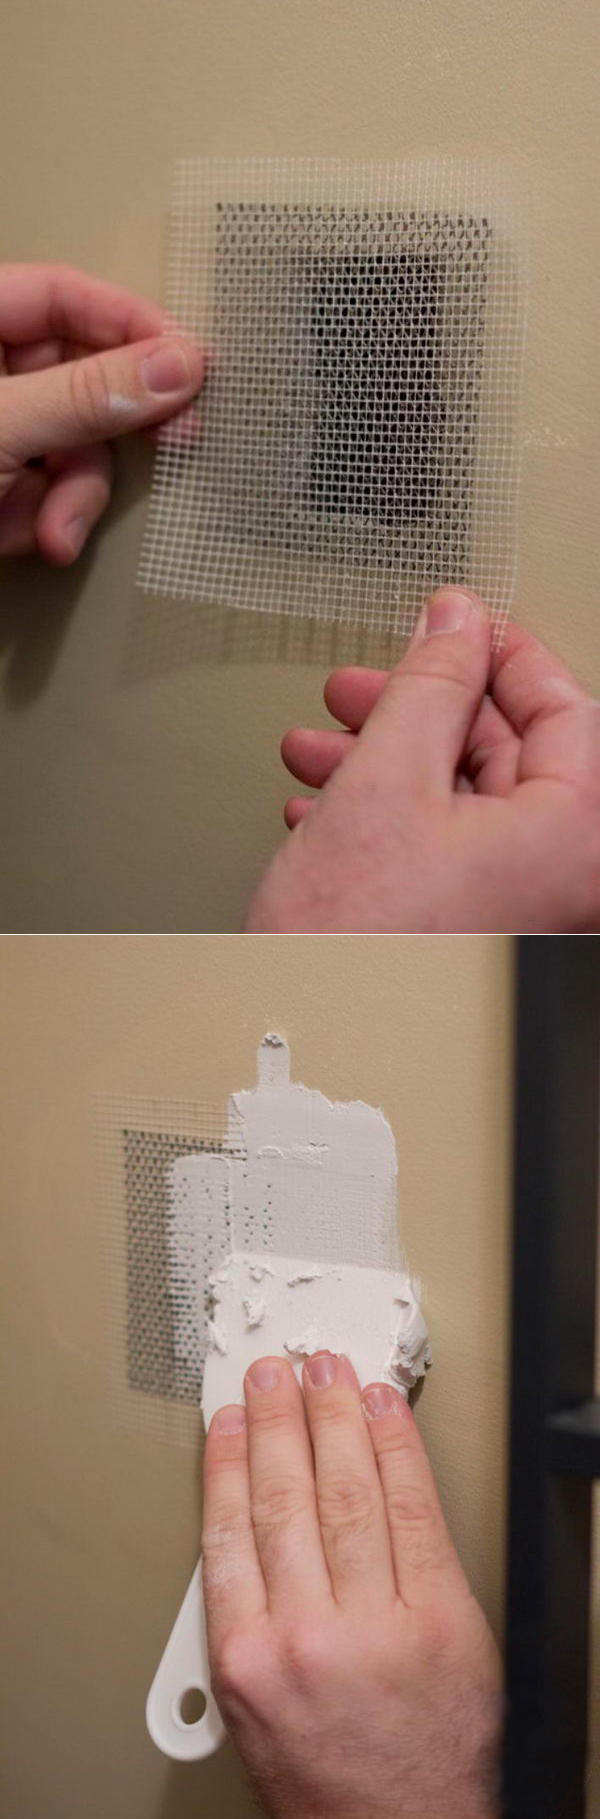 YITAP professional drywall mesh tape repair for corners